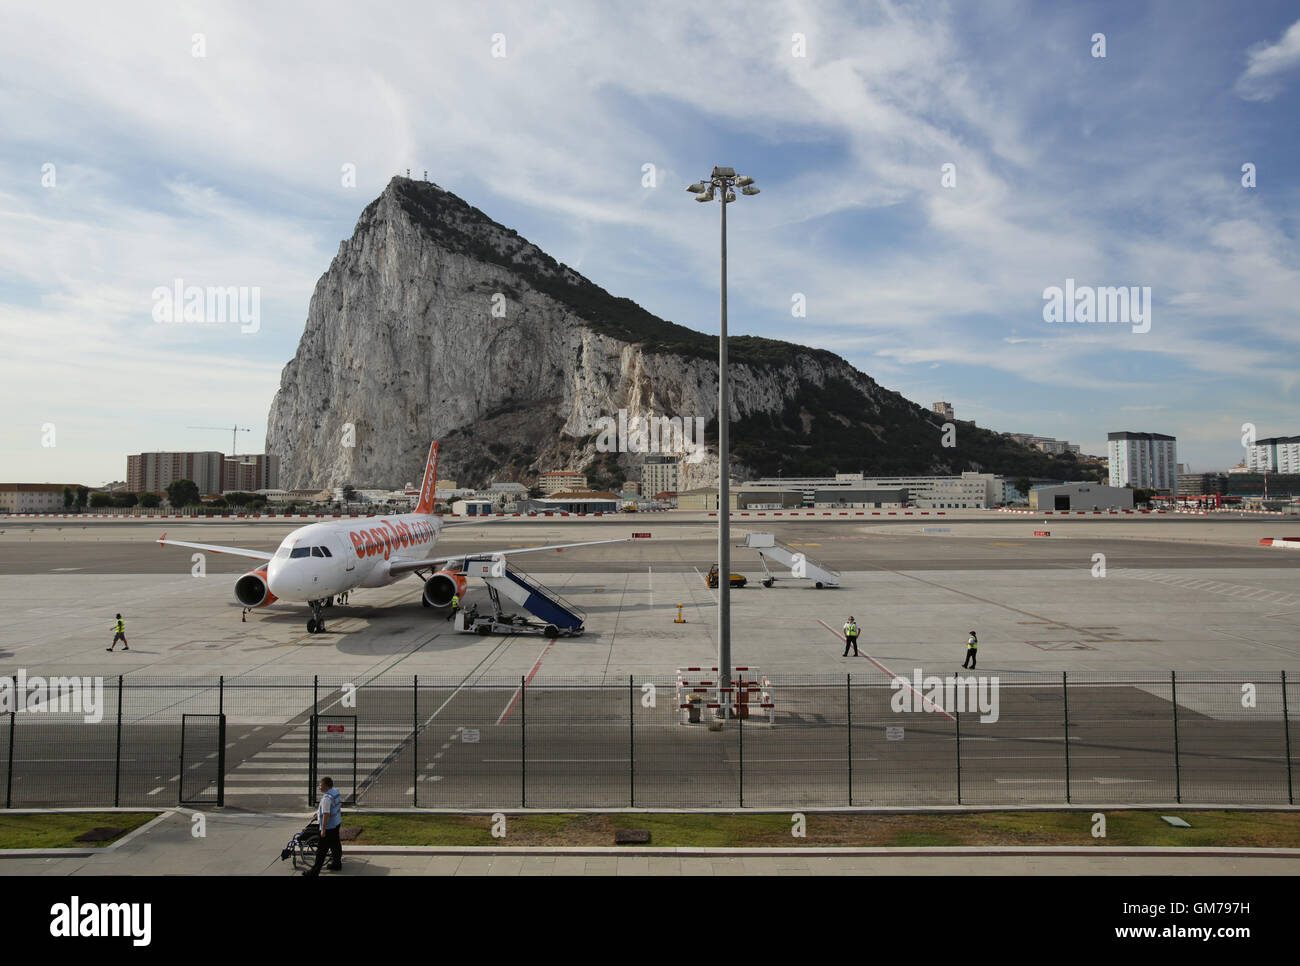 Ein EasyJet Flugzeug auf der Landebahn des Flughafen von Gibraltar, vor dem Hintergrund der Felsen von Gibraltar. PRESSEVERBAND Foto. Bild Datum: Freitag, 11. September 2015. Bildnachweis sollte lauten: Yui Mok/PA Wire Stockfoto